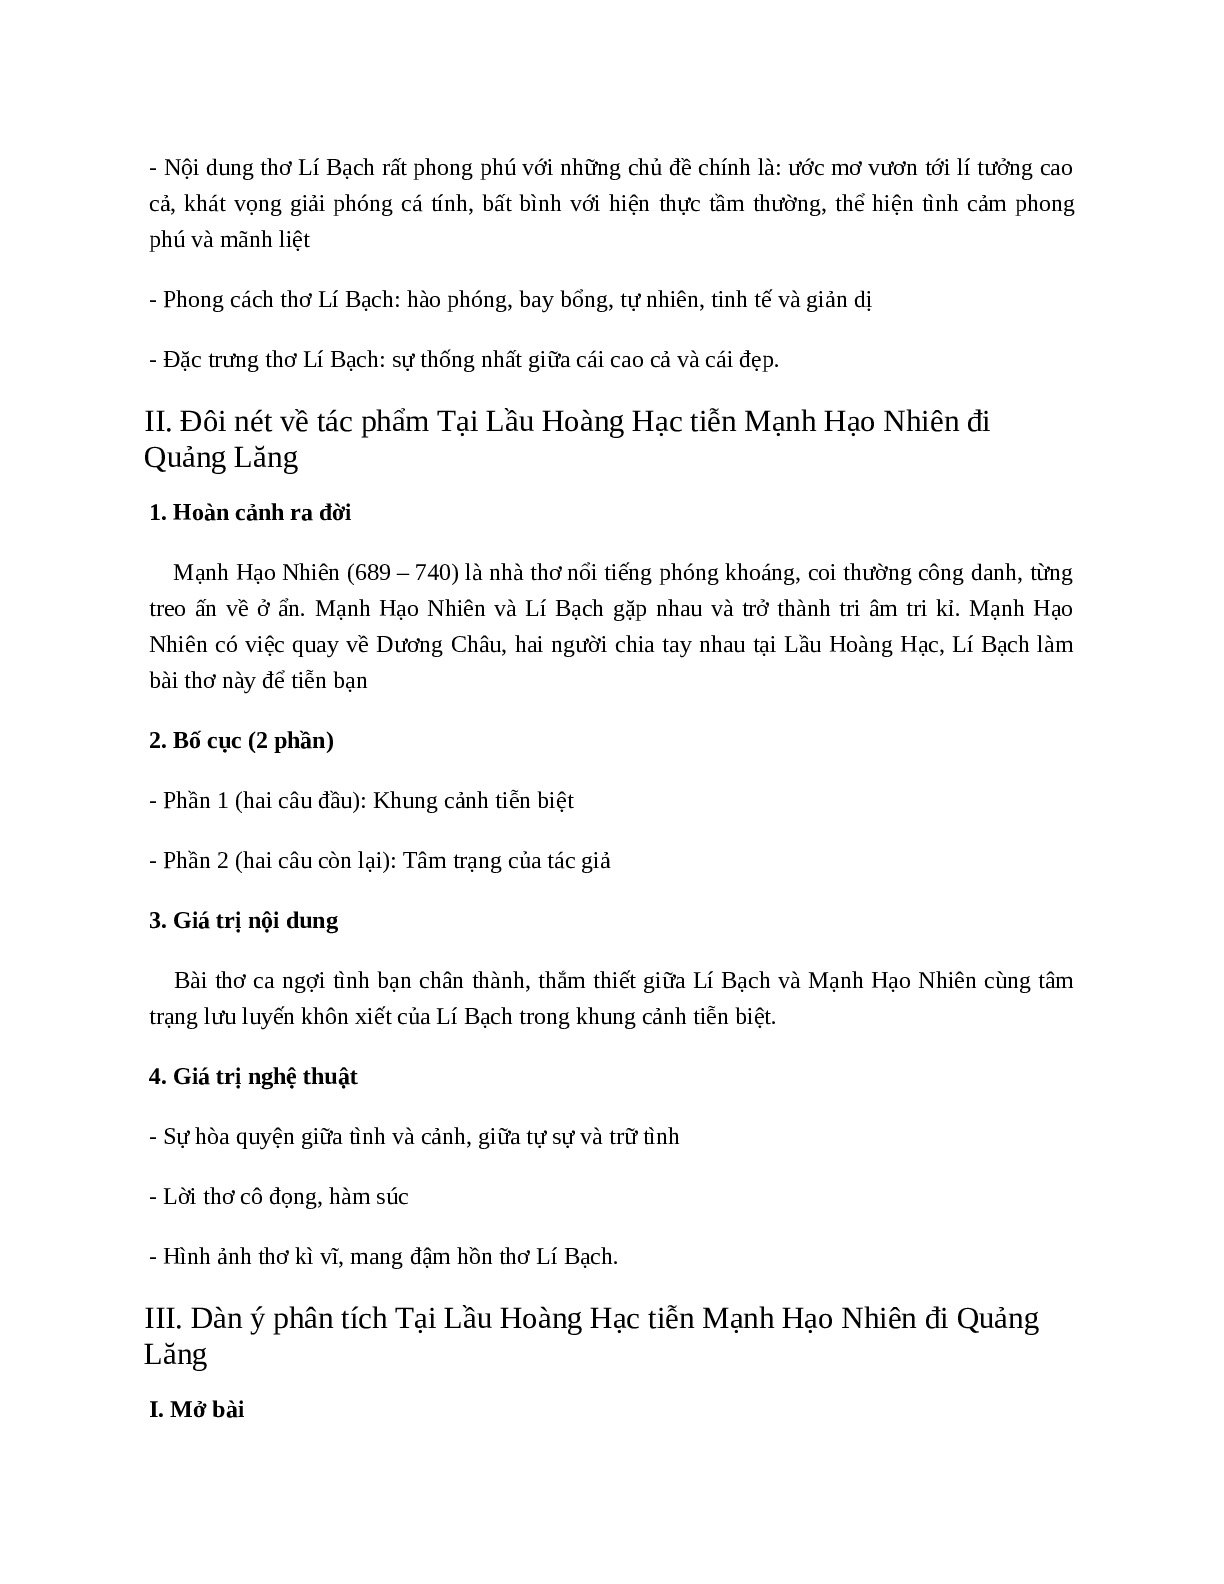 Tại Lầu Hoàng Hạc tiễn Mạnh Hạo Nhiên đi Quảng Lăng - nội dung, dàn ý phân tích, bố cục, tóm tắt (trang 2)